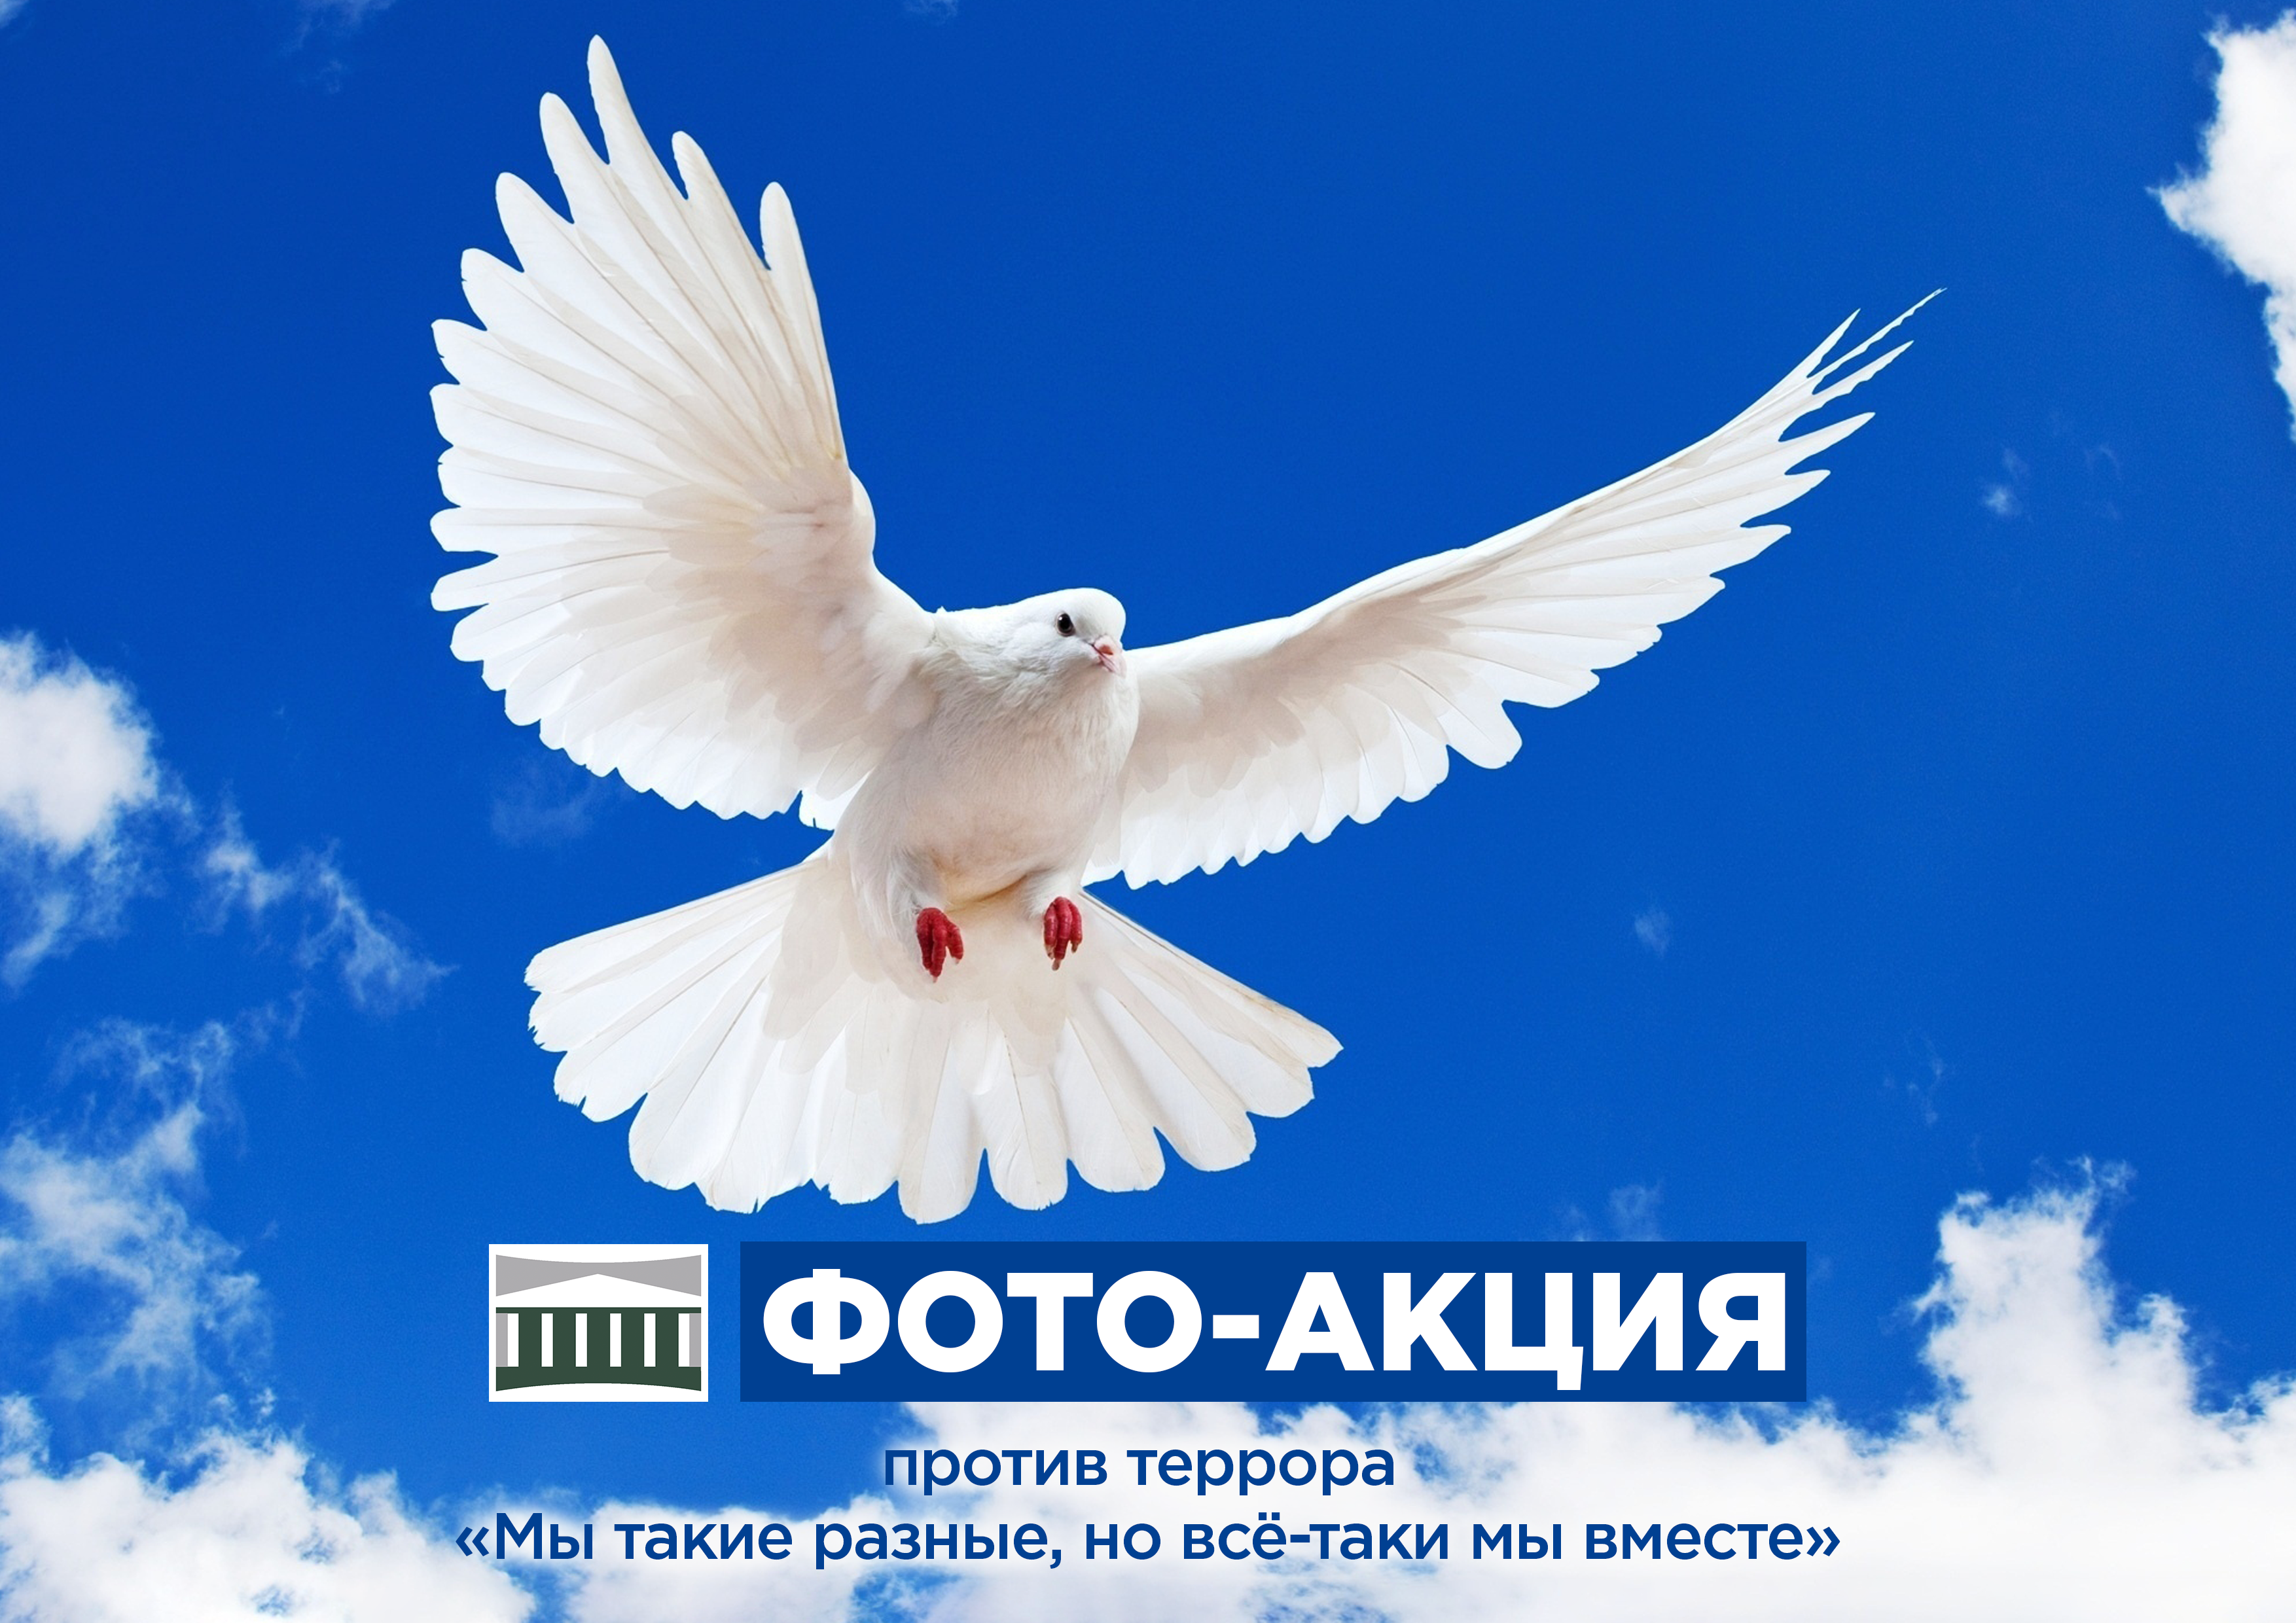 Новодвинский городской культурный центр приглашает жителей города принять участие в фото-акции против террора «Мы такие разные, но всё-таки мы вместе» с 14 по 30 ноября 2022г.